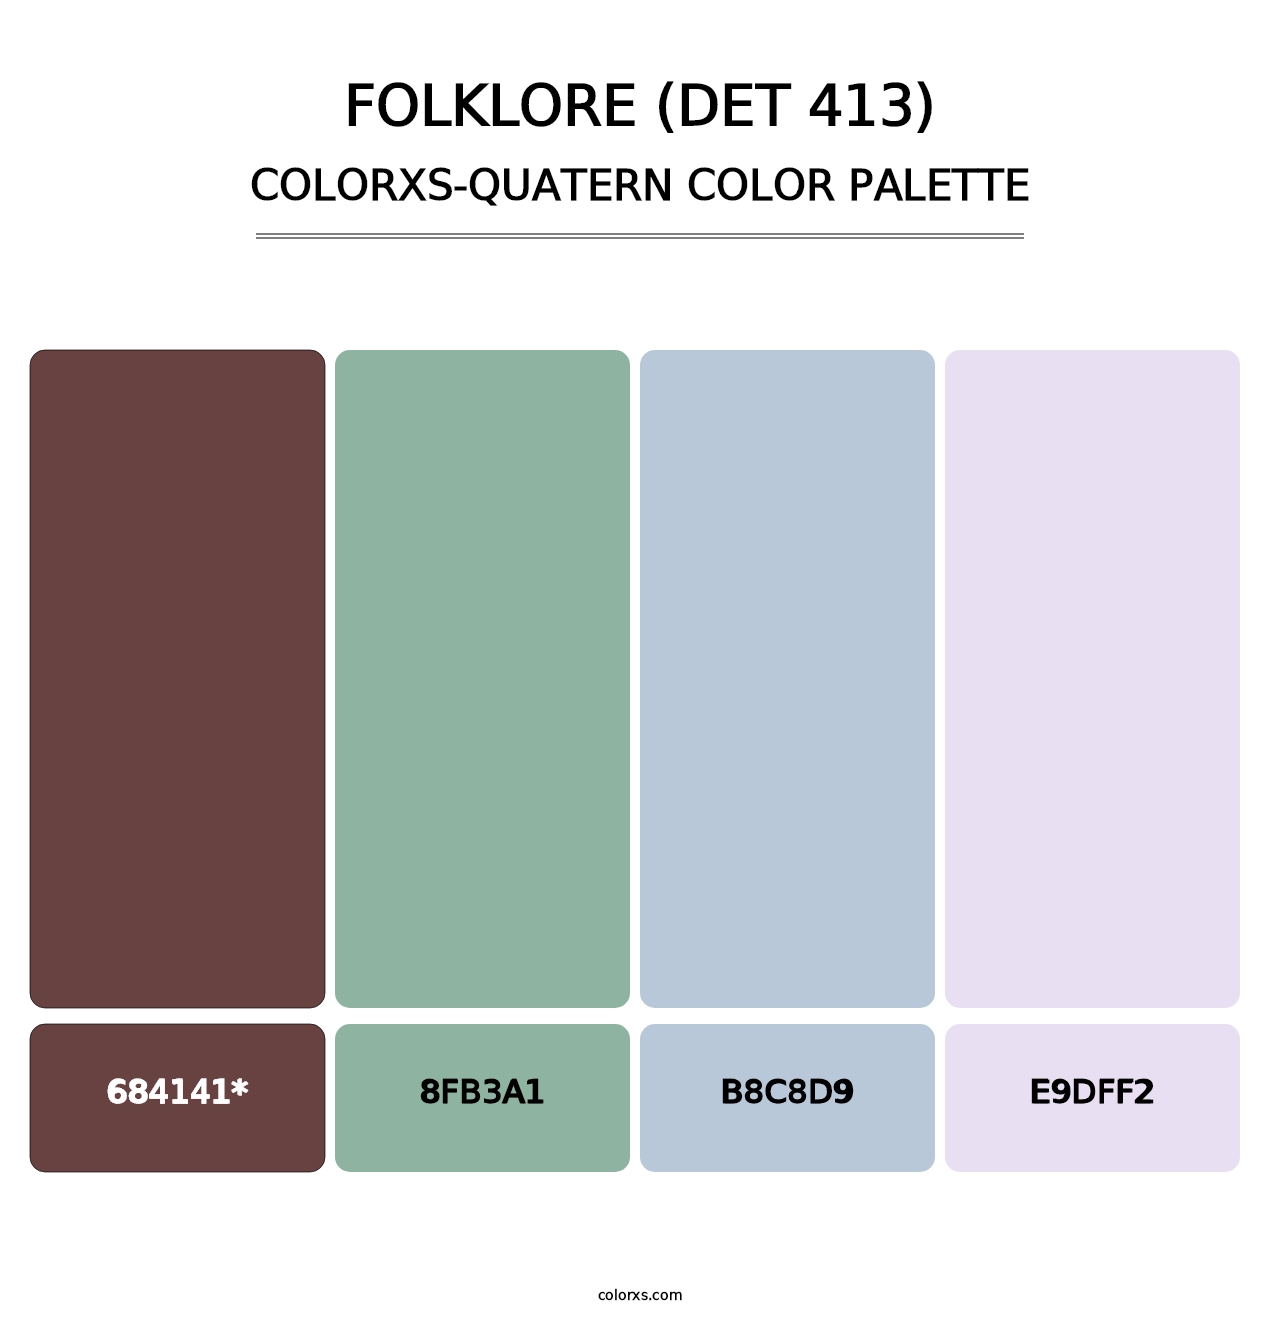 Folklore (DET 413) - Colorxs Quatern Palette